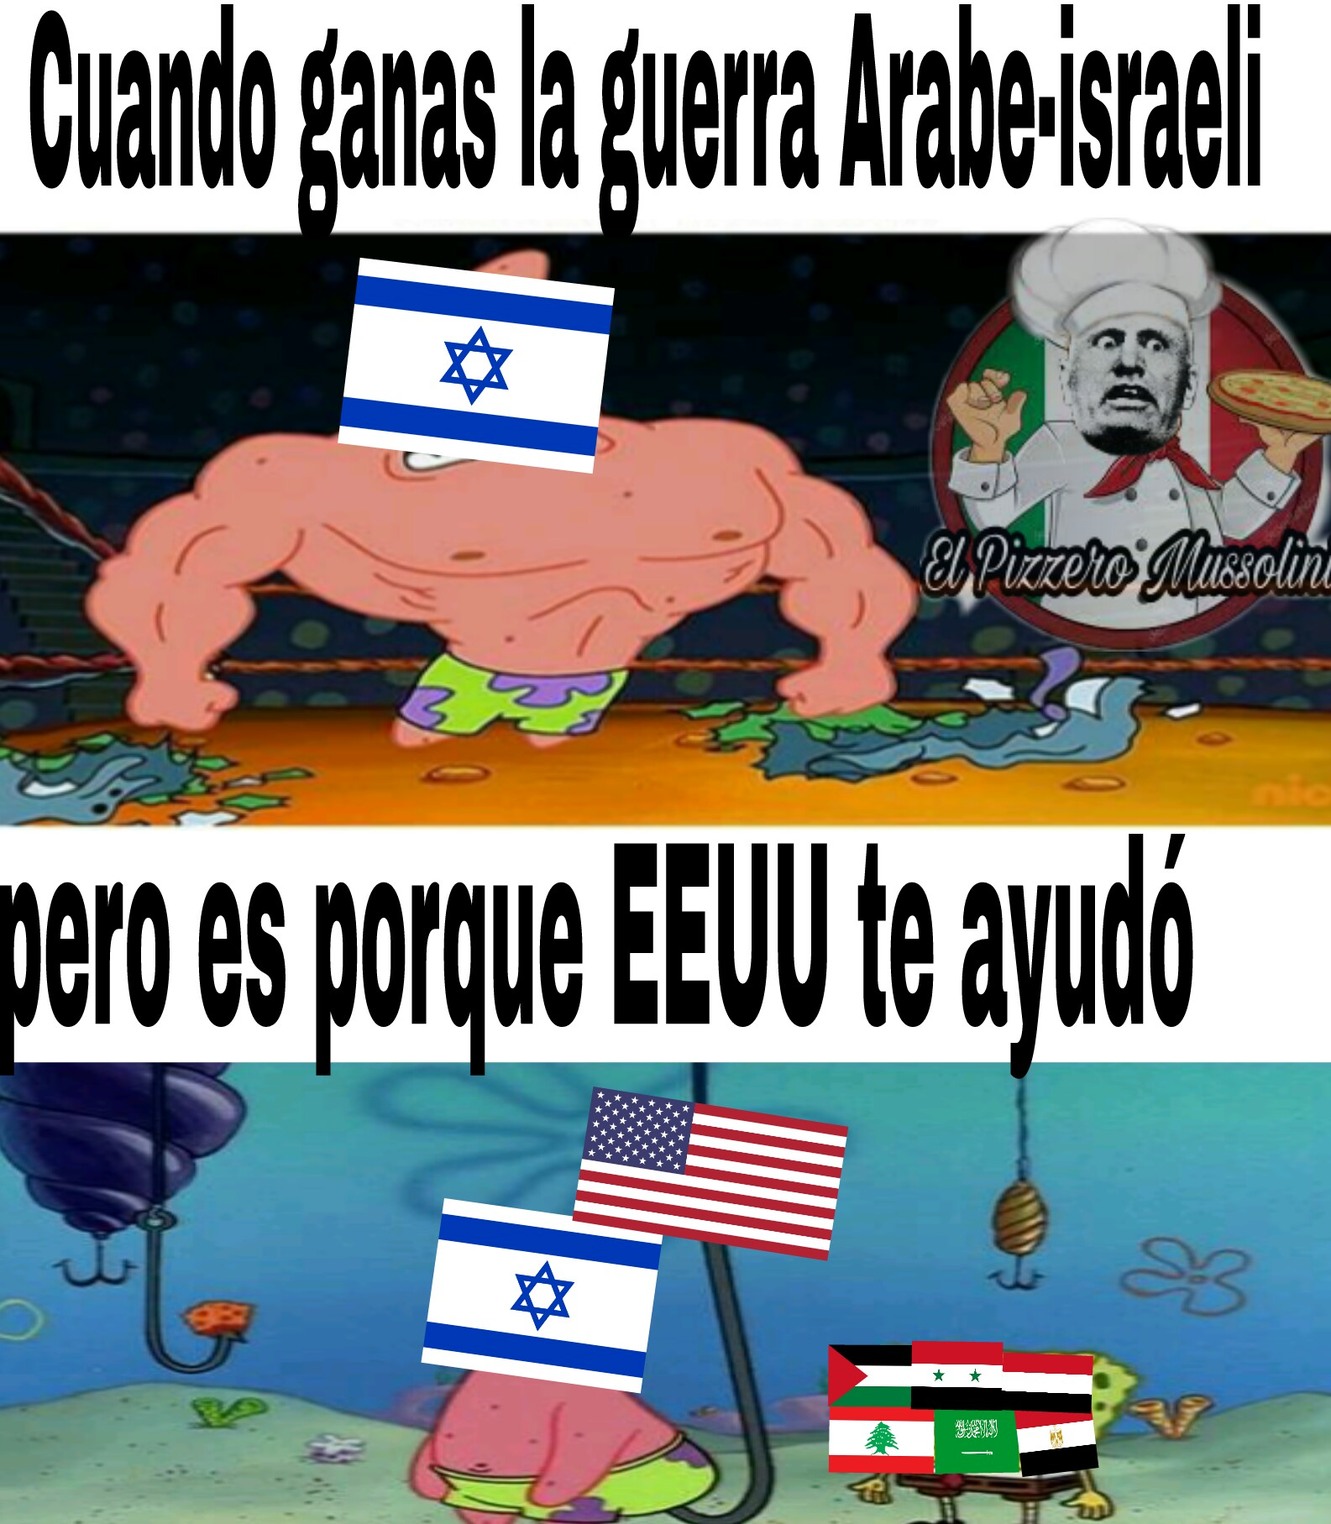 Israel no existiria sin eeuu - Meme by El_pizzero_mussolini 